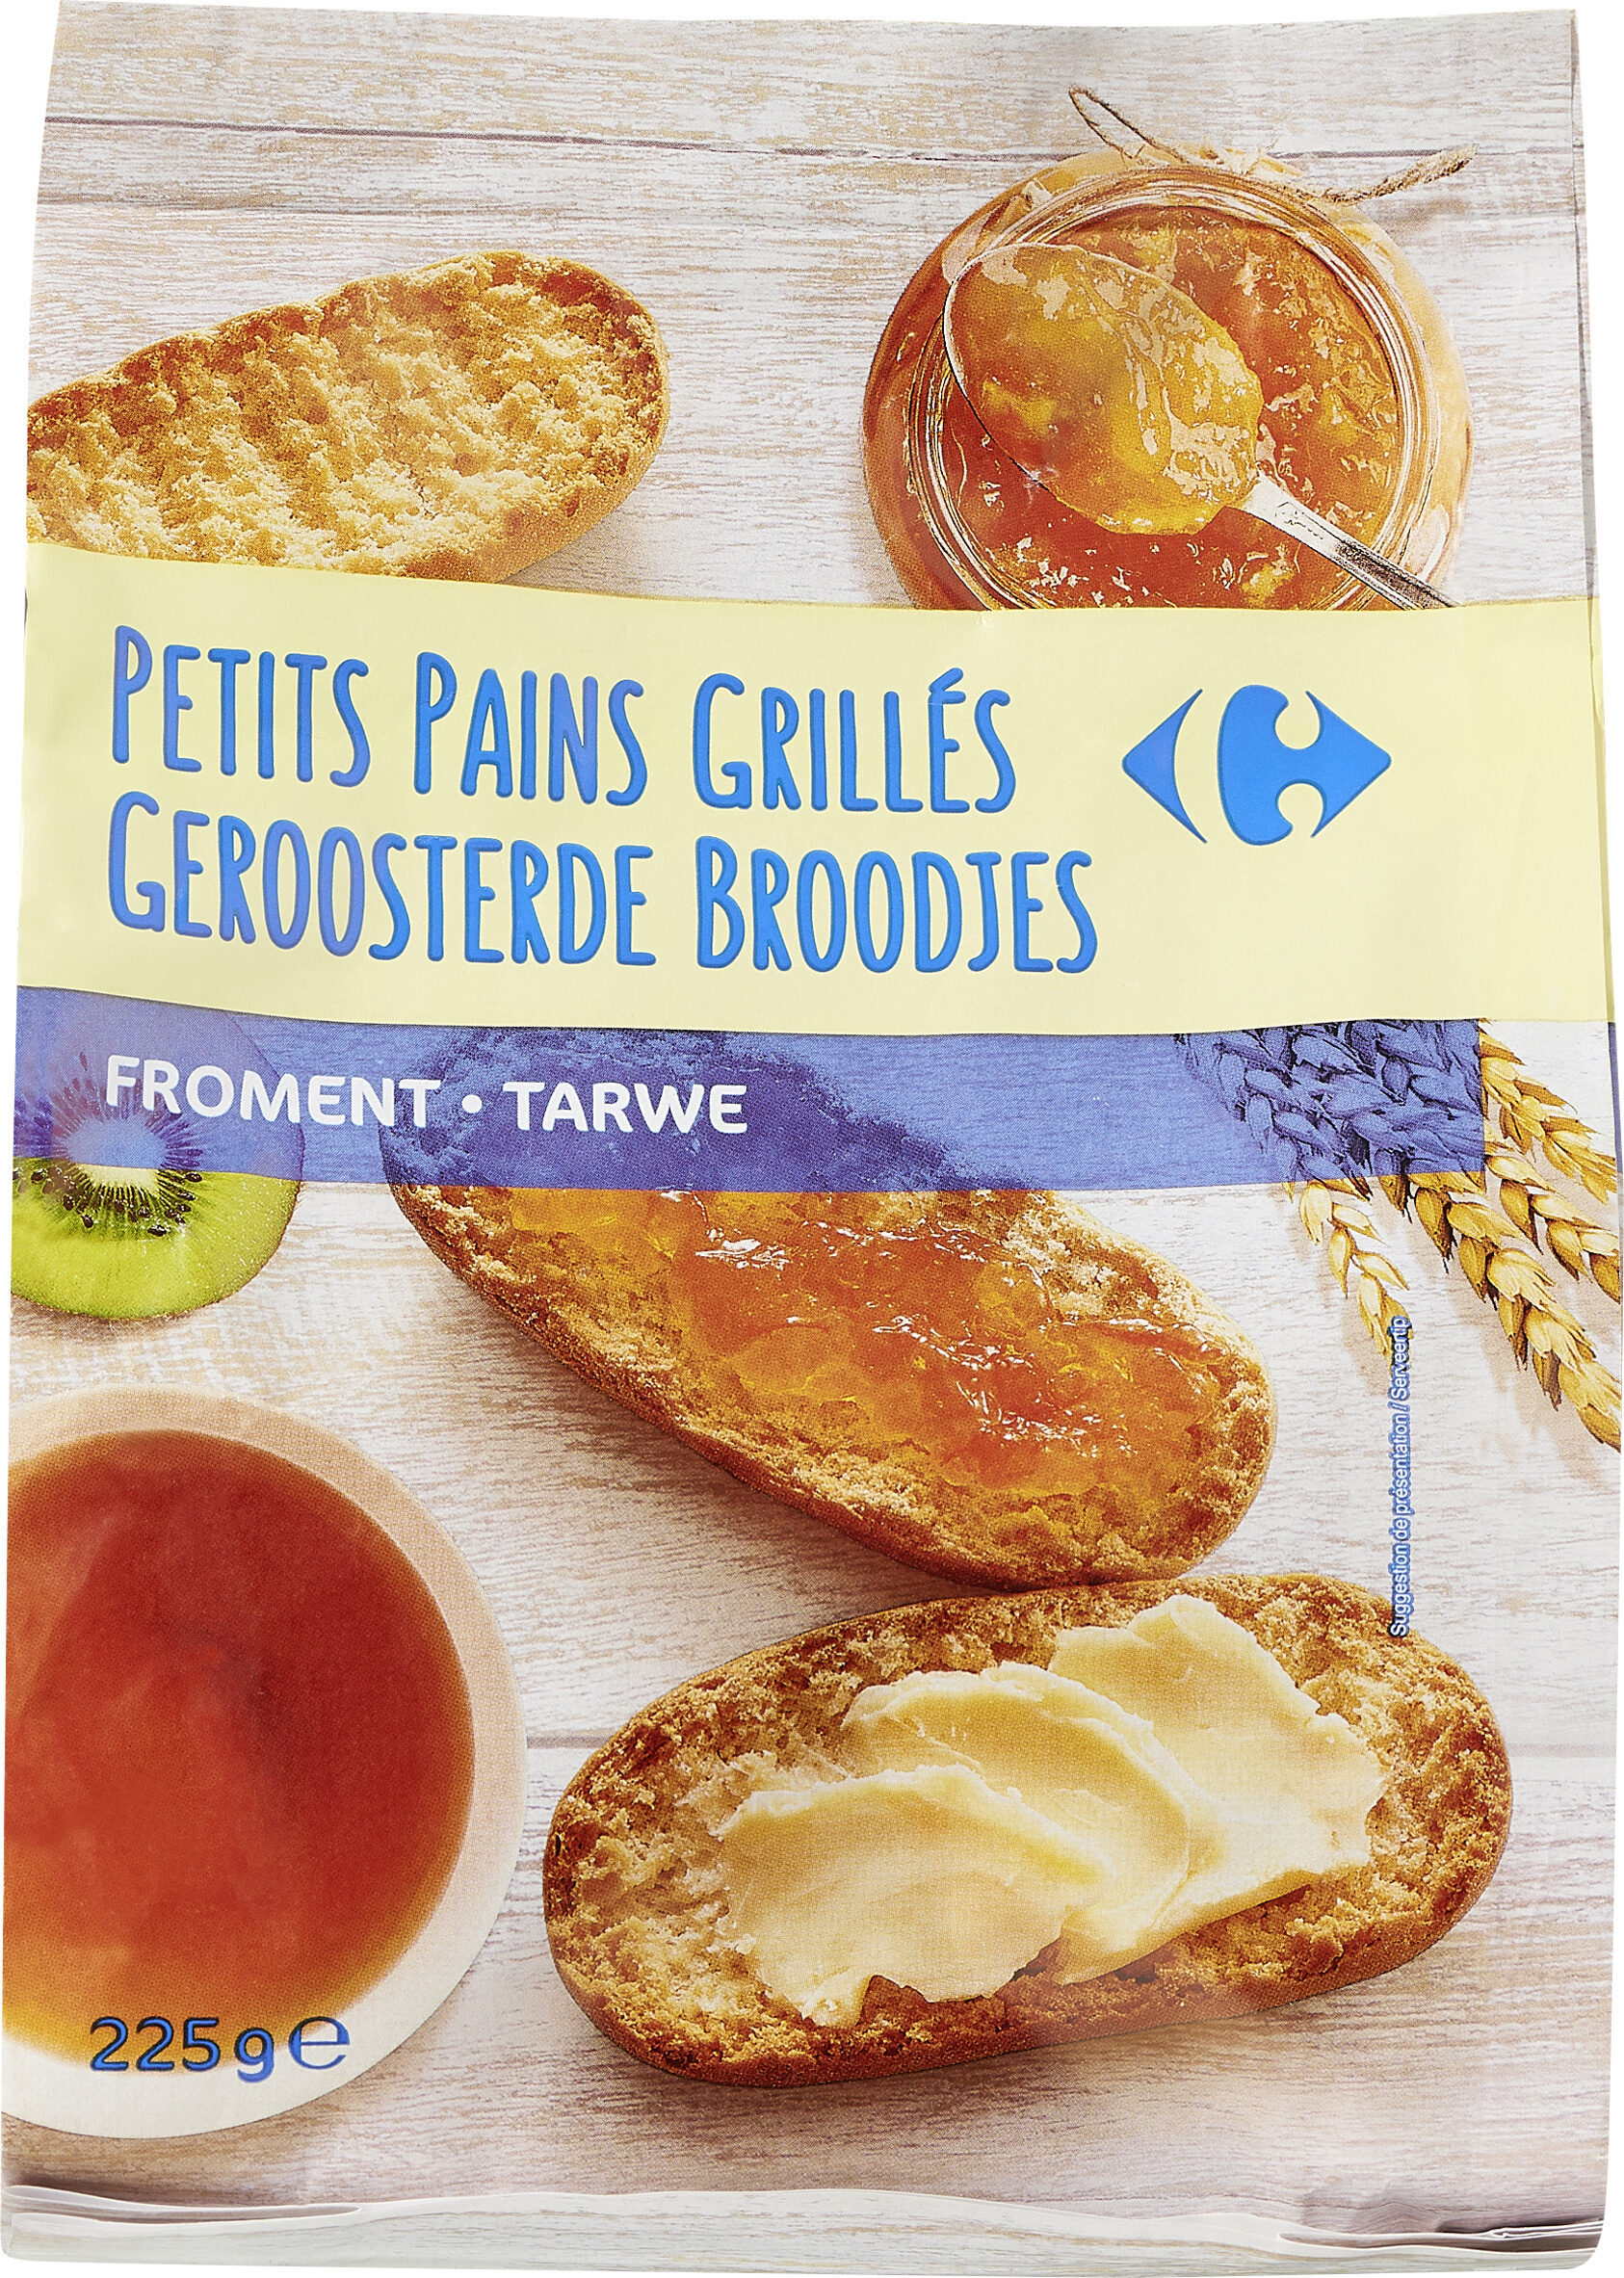 Petits pains grillés Nature - Product - fr